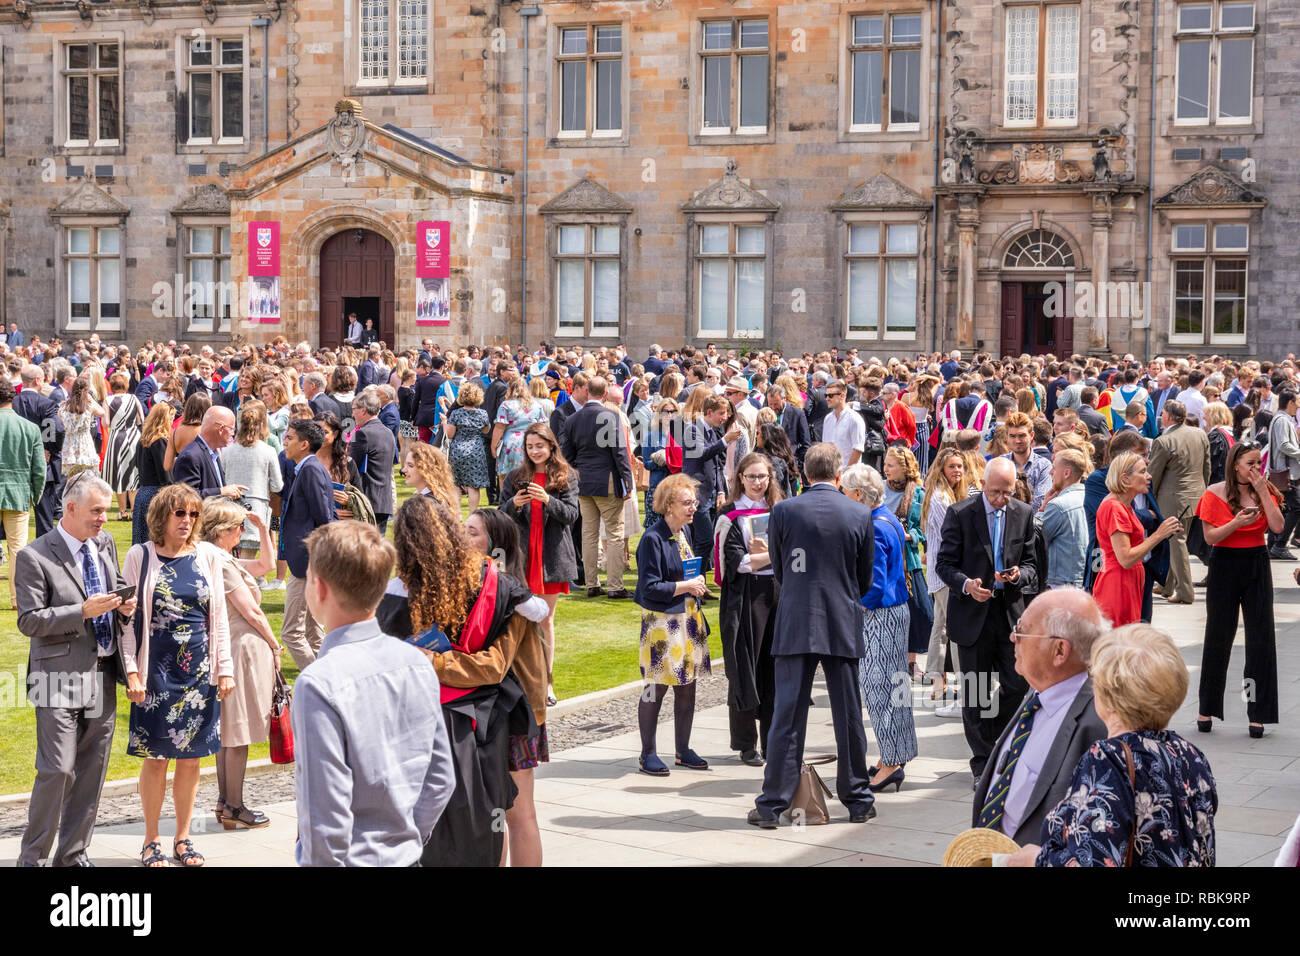 Studenten, Freunde und Familien feiern Tag der Promotion im Juni 2018 in St. Salvators Quad, Universität St Andrews, Fife, Schottland Großbritannien Stockfoto